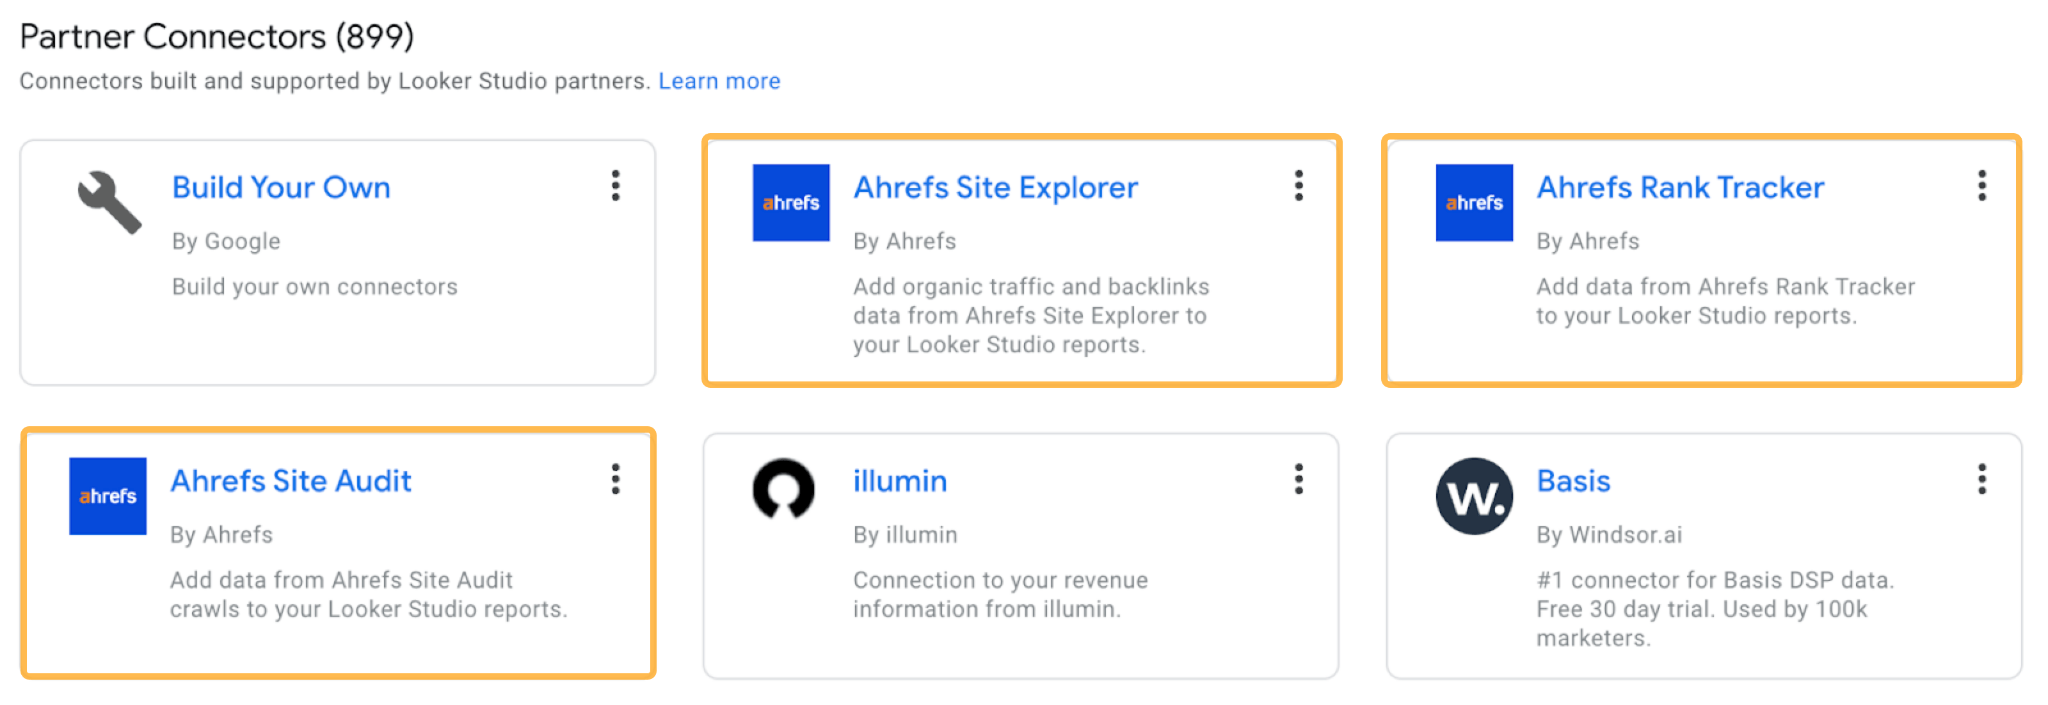 Ahrefs' Partner connectors for Google Looker Studio